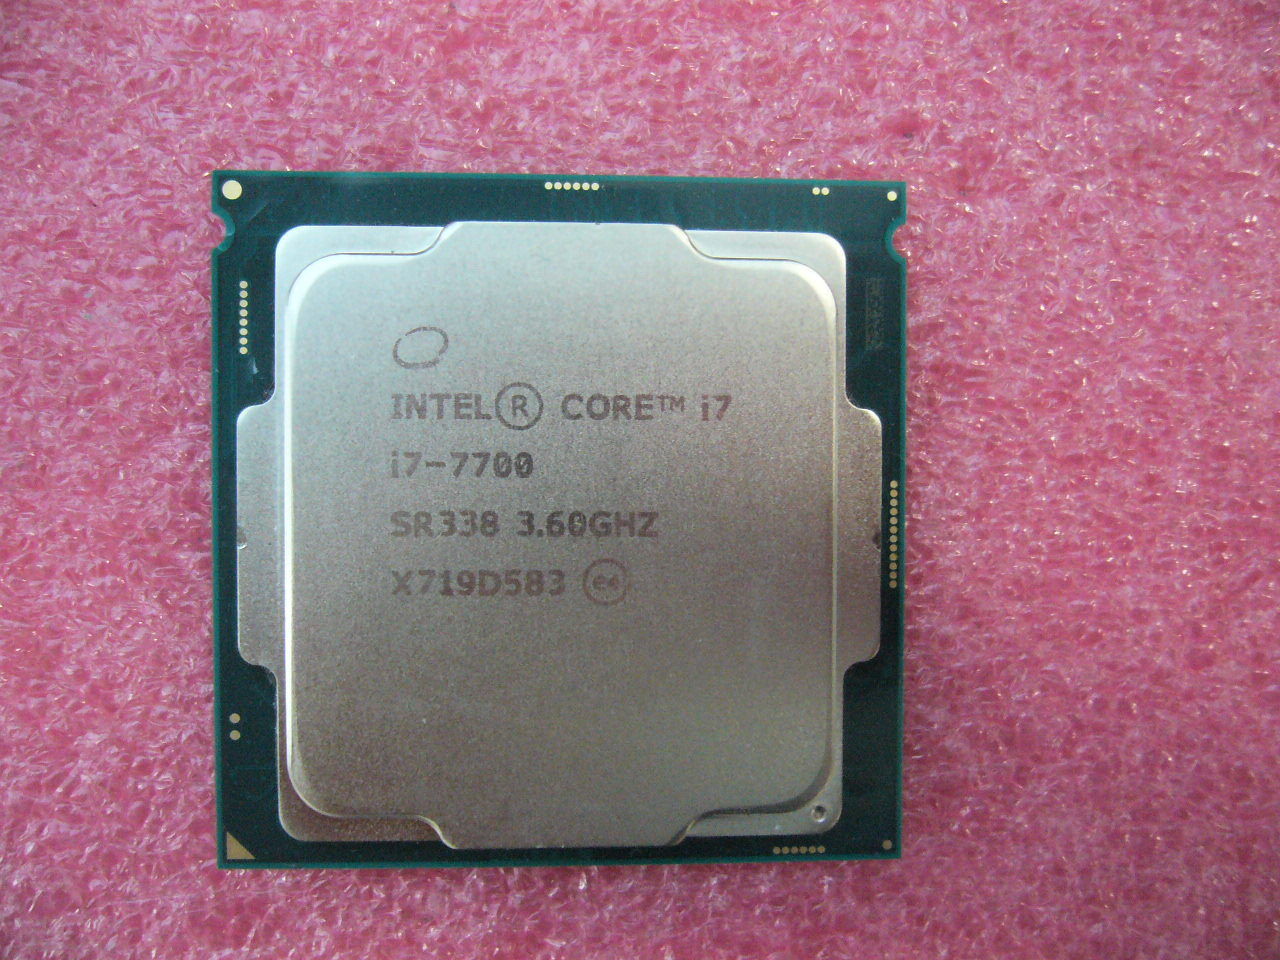 QTY 1x Intel CPU i7-7700 Quad-Cores 3.6Ghz 8MB LGA1151 SR338 NOT WORKING - zum Schließen ins Bild klicken